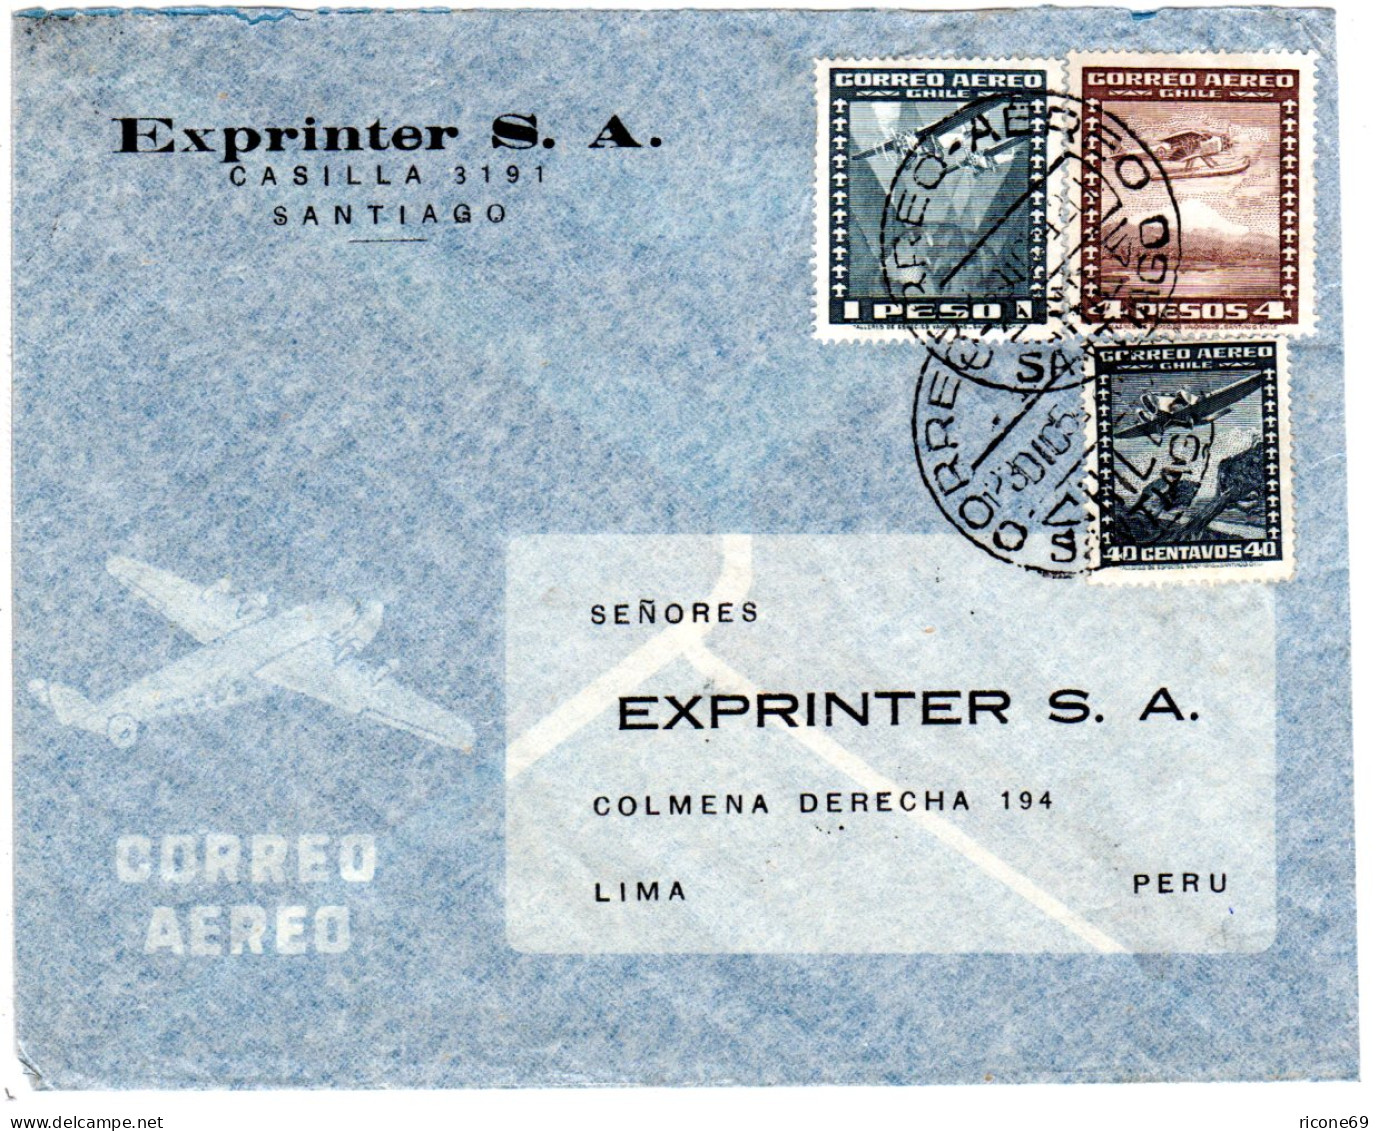 Chile 1954, 40 C.+1+4 P. Auf Luftpost Brief V. Santiago N. Peru. - Chile